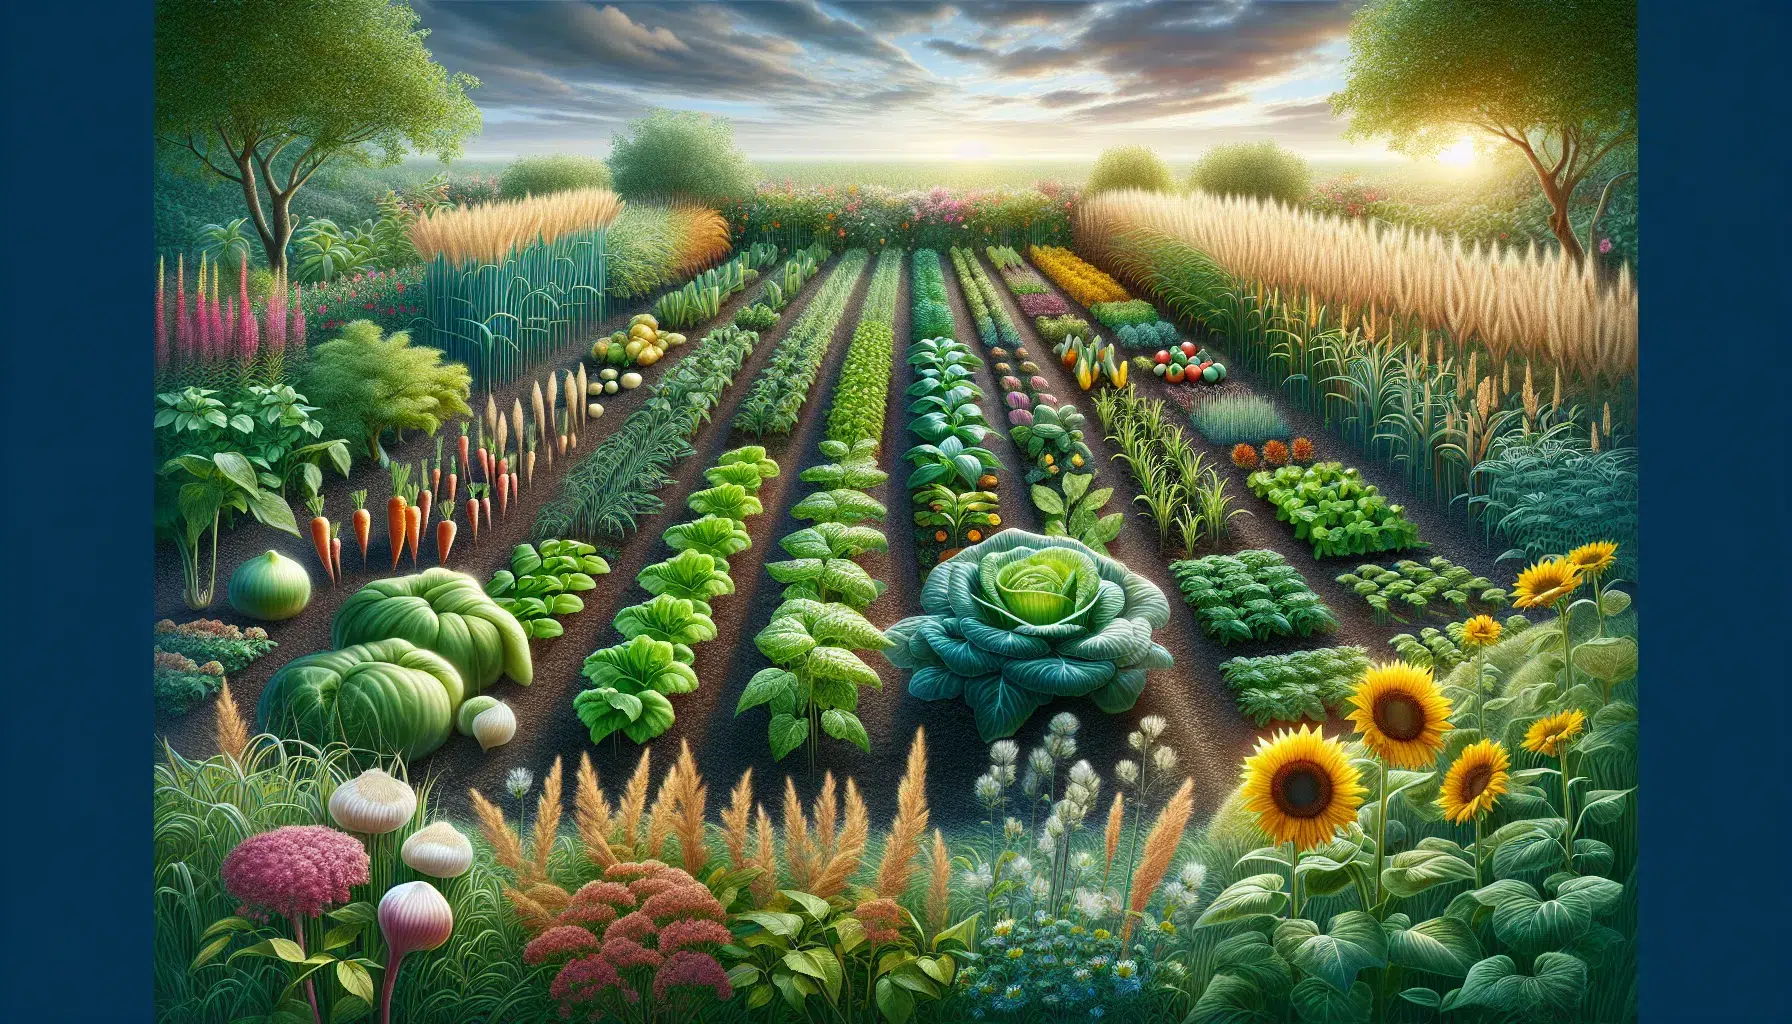 Imagen de un huerto con diferentes tipos de plantas intercaladas, representando la rotación de cultivos de forma exitosa.